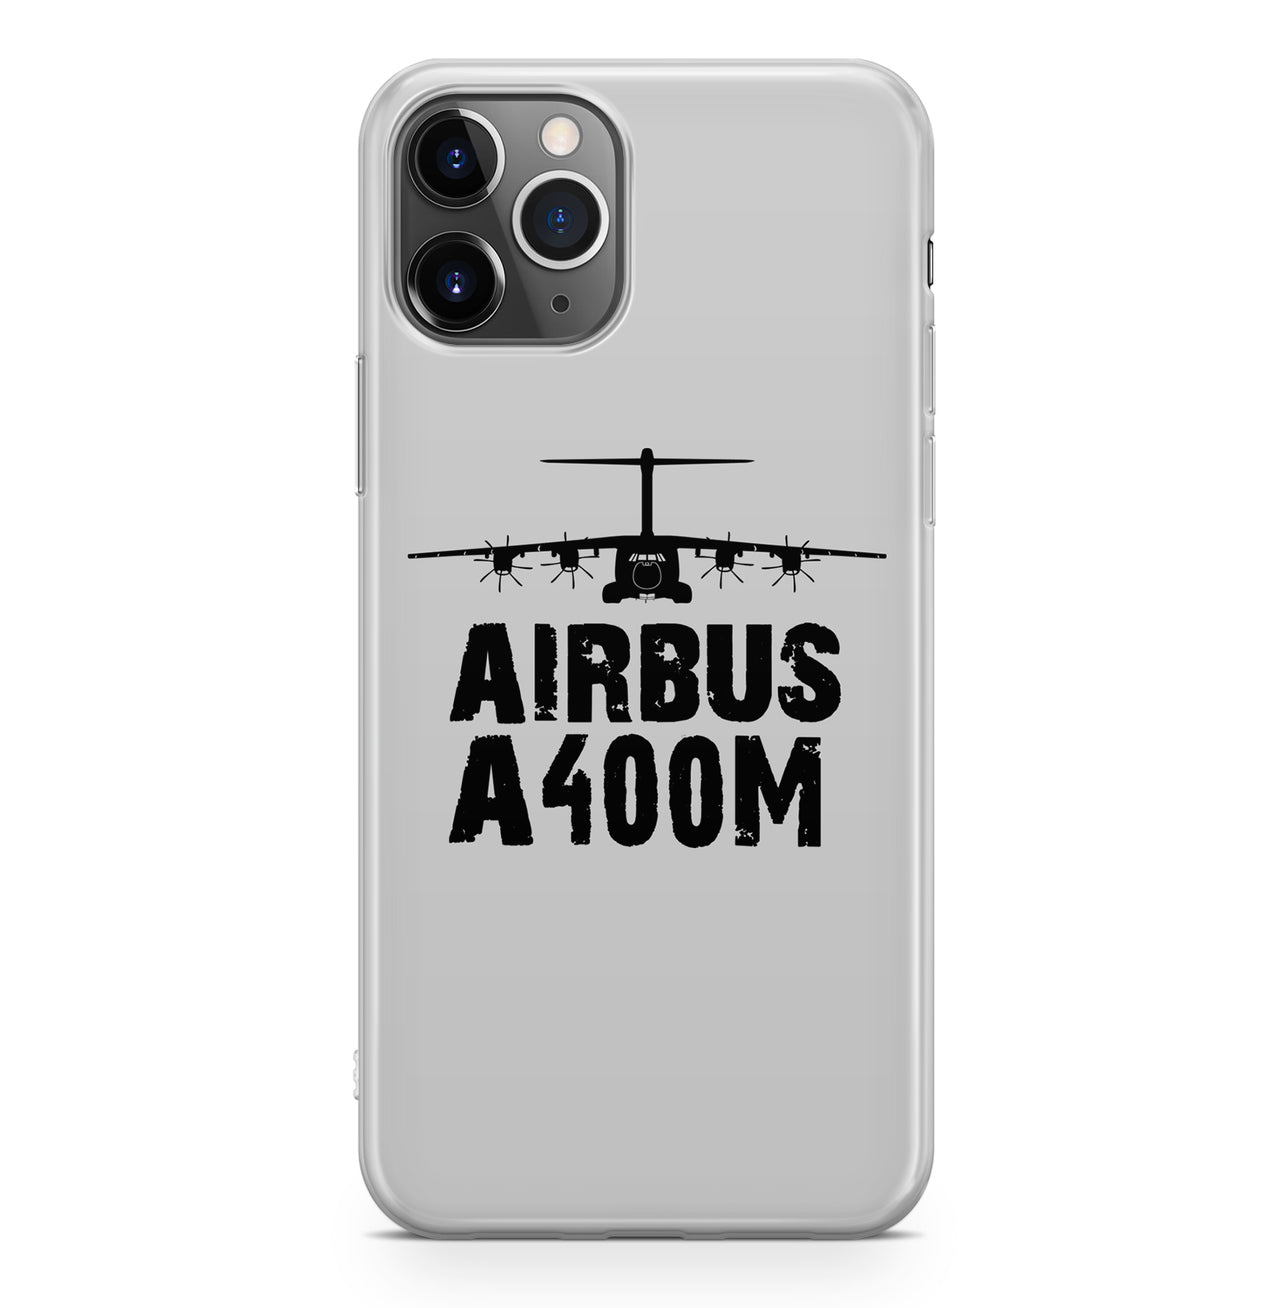 Airbus A400M & Plane Designed iPhone Cases